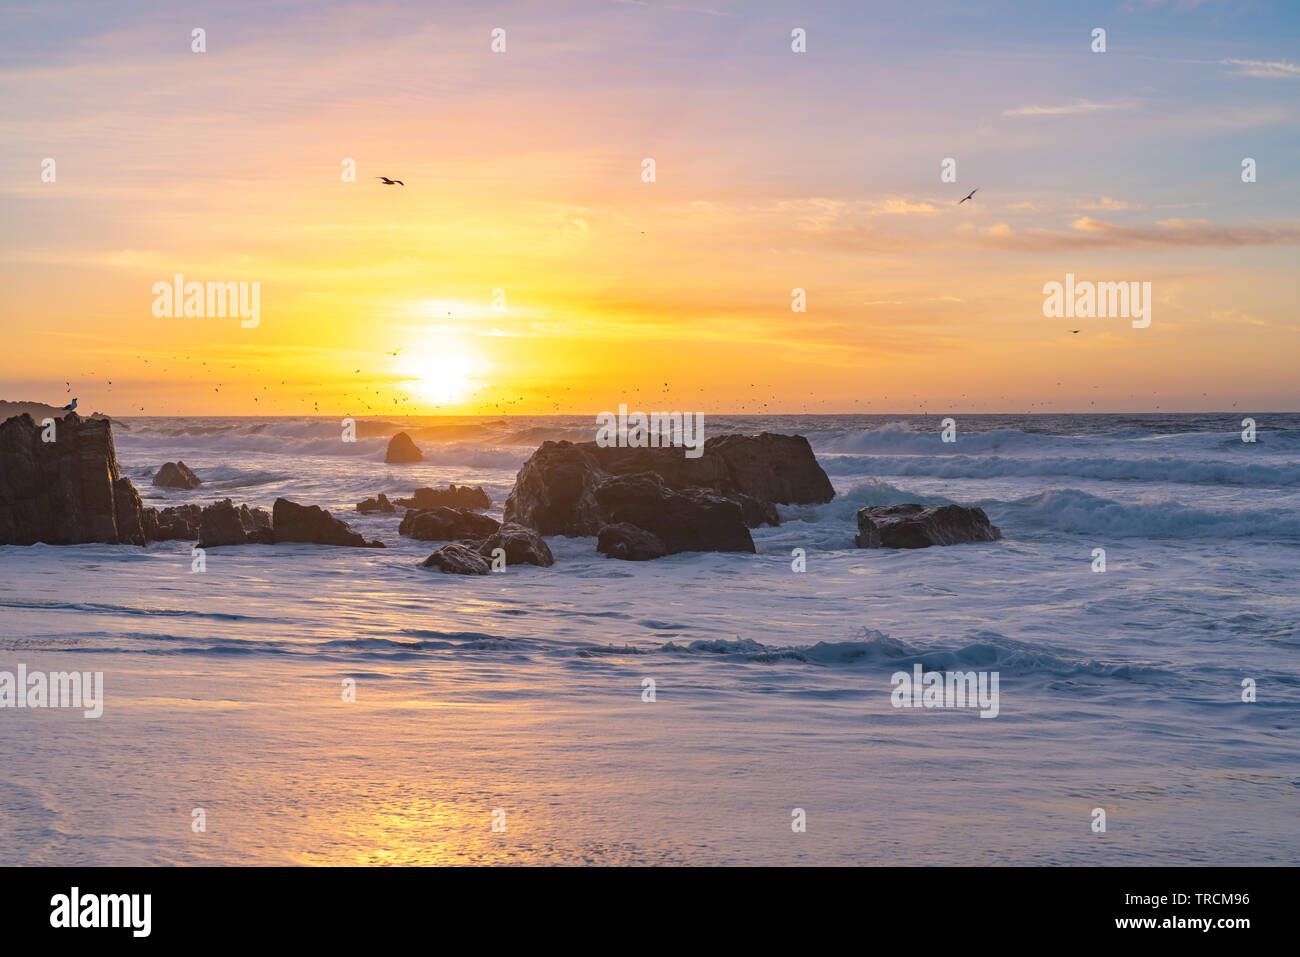 Sonnenuntergang an einem Sandstrand Big Sur, Kalifornien Strand mit großen Wellen wie Vögel fliegen Overhead. Stockfoto